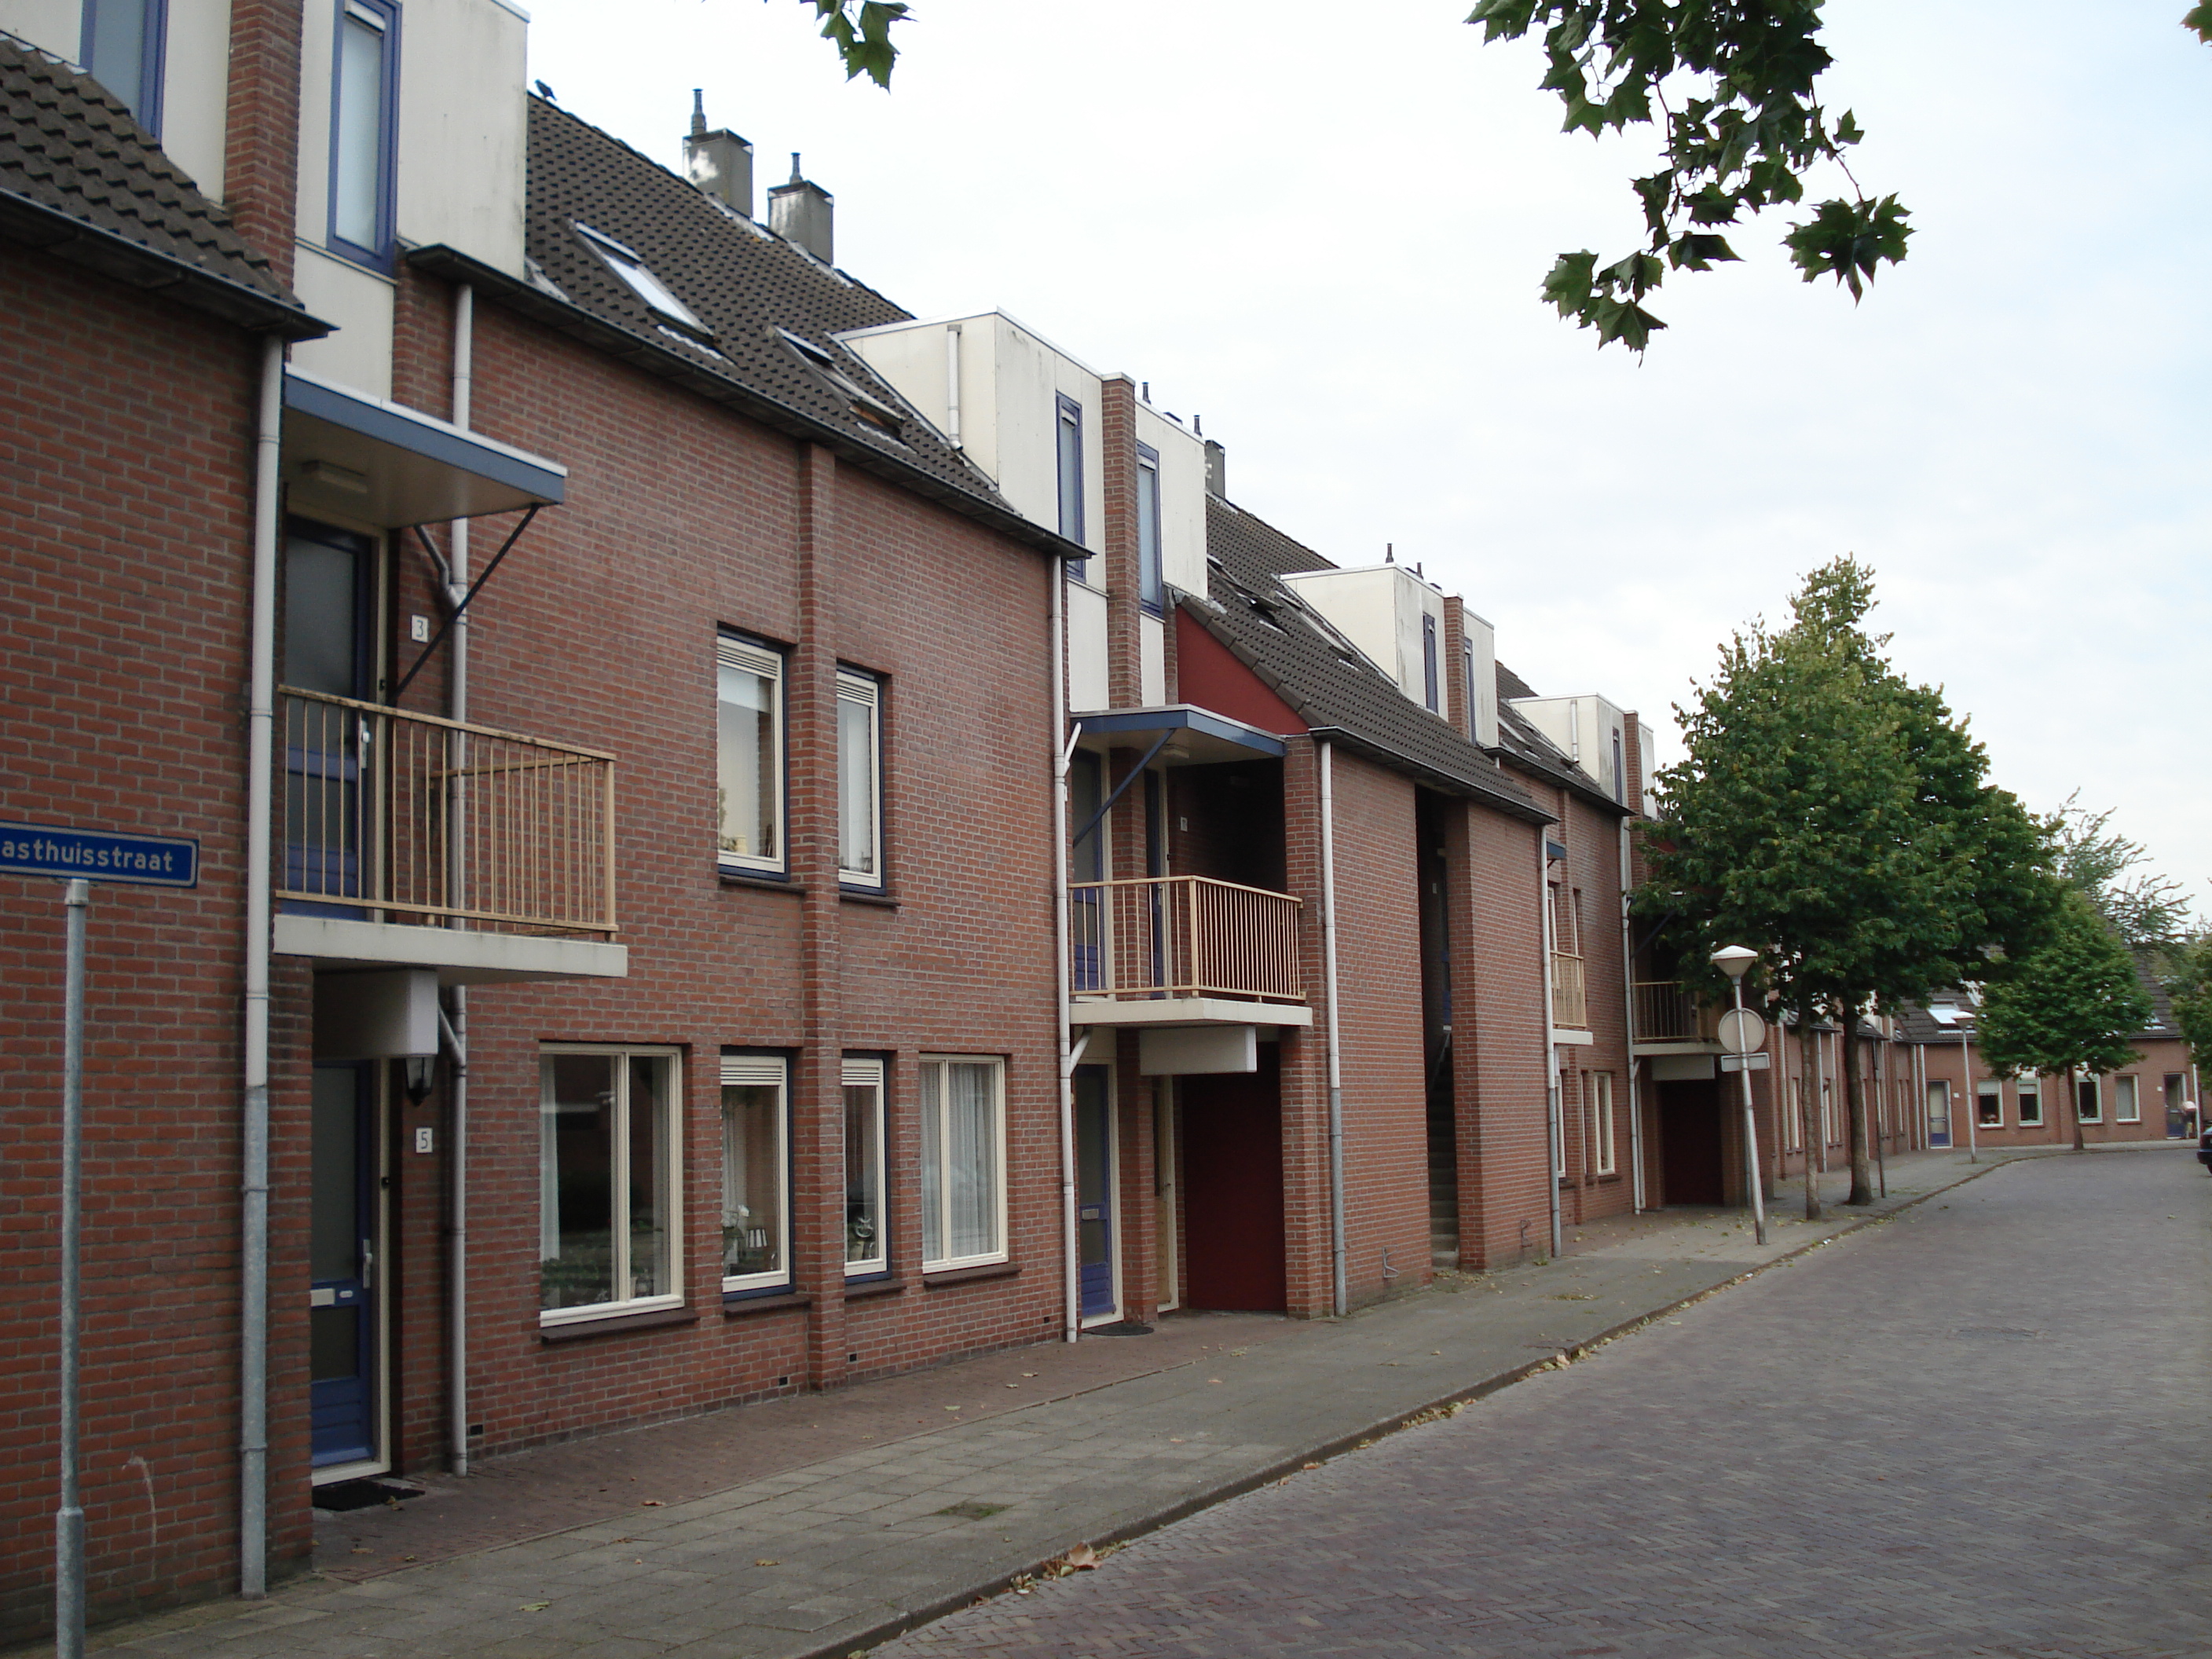 Gasthuisstraat 5, 7741 HV Coevorden, Nederland